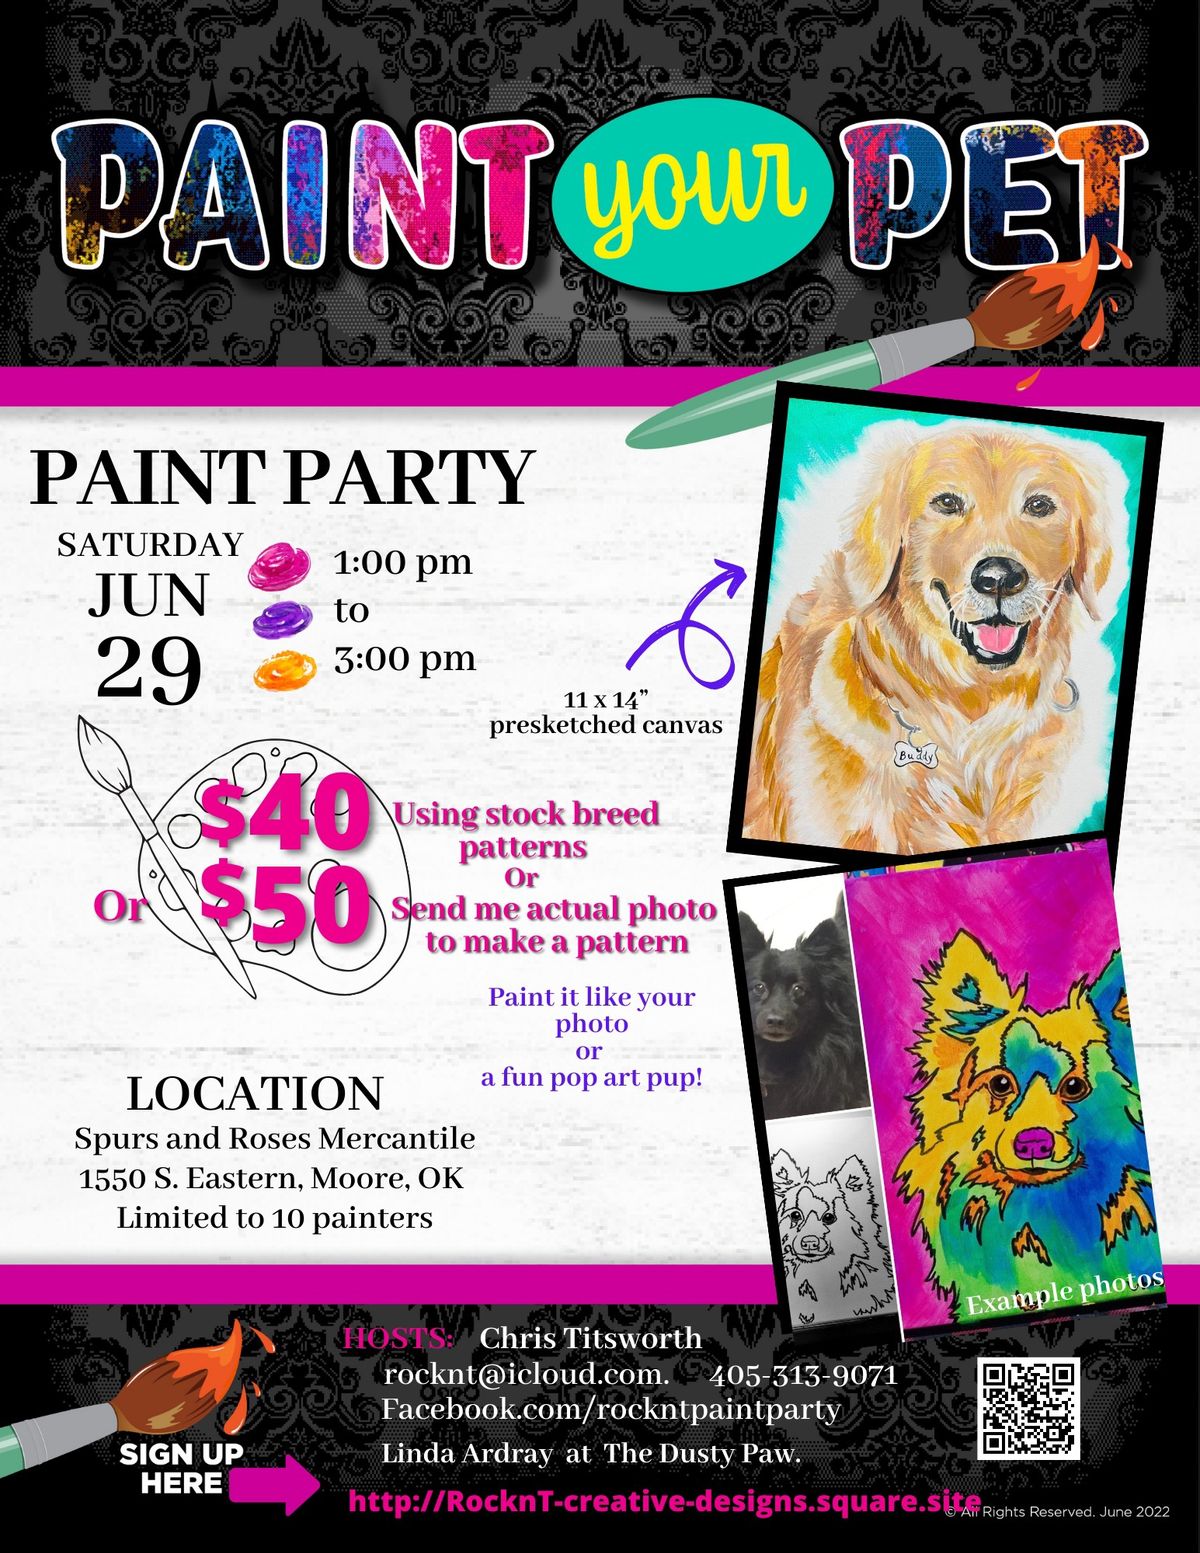 June 29th Paint your Pet Paint Party